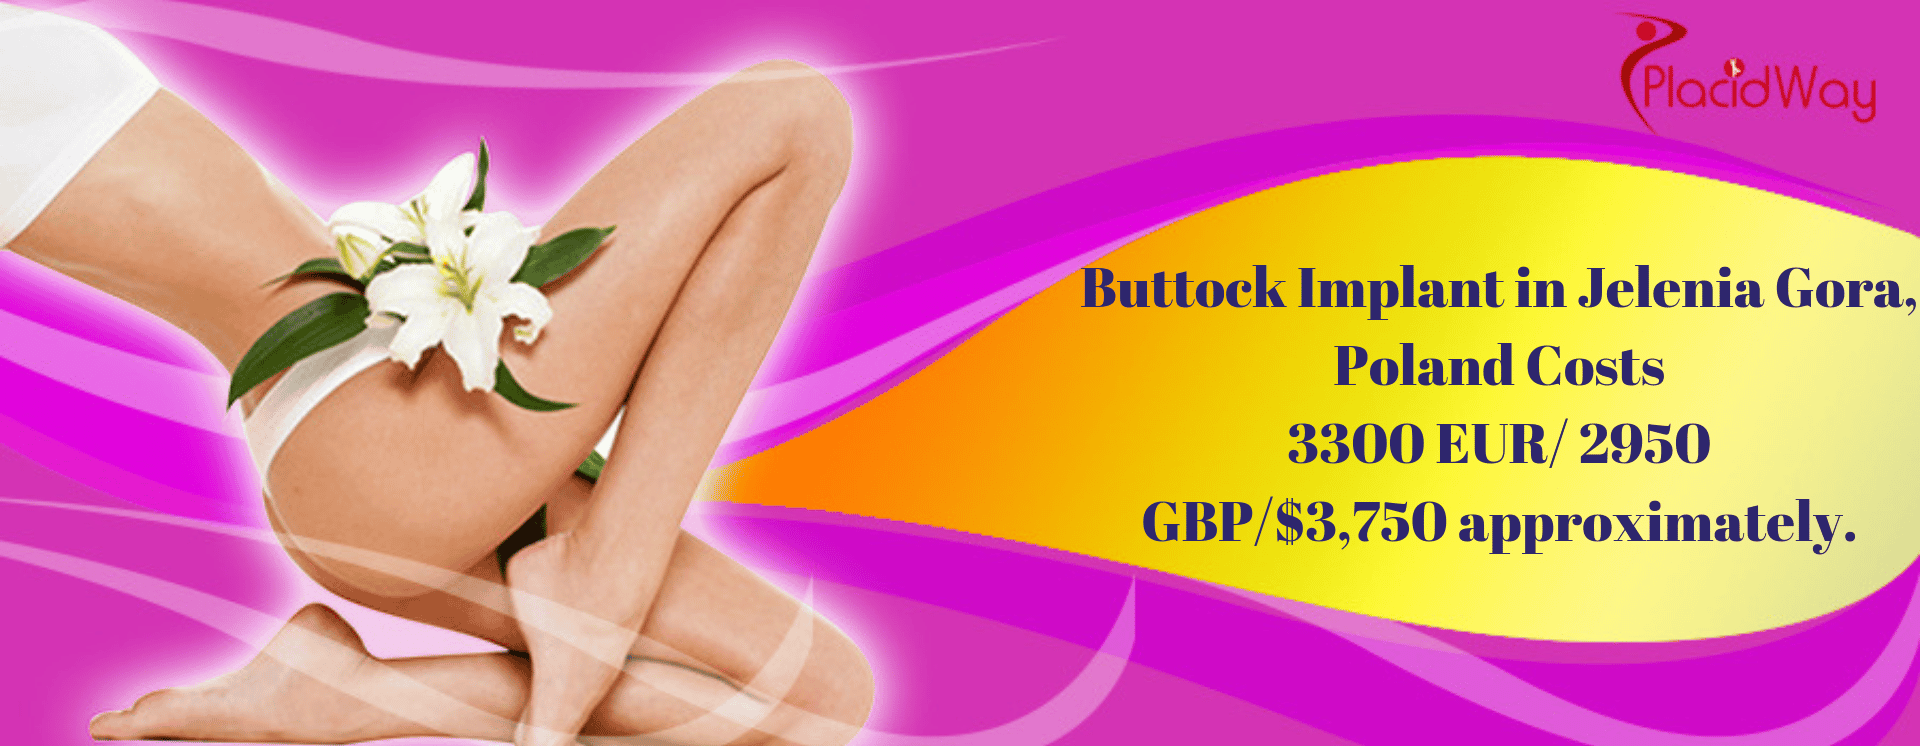 Buttock Implant in Jelenia Gora, Poland Cost